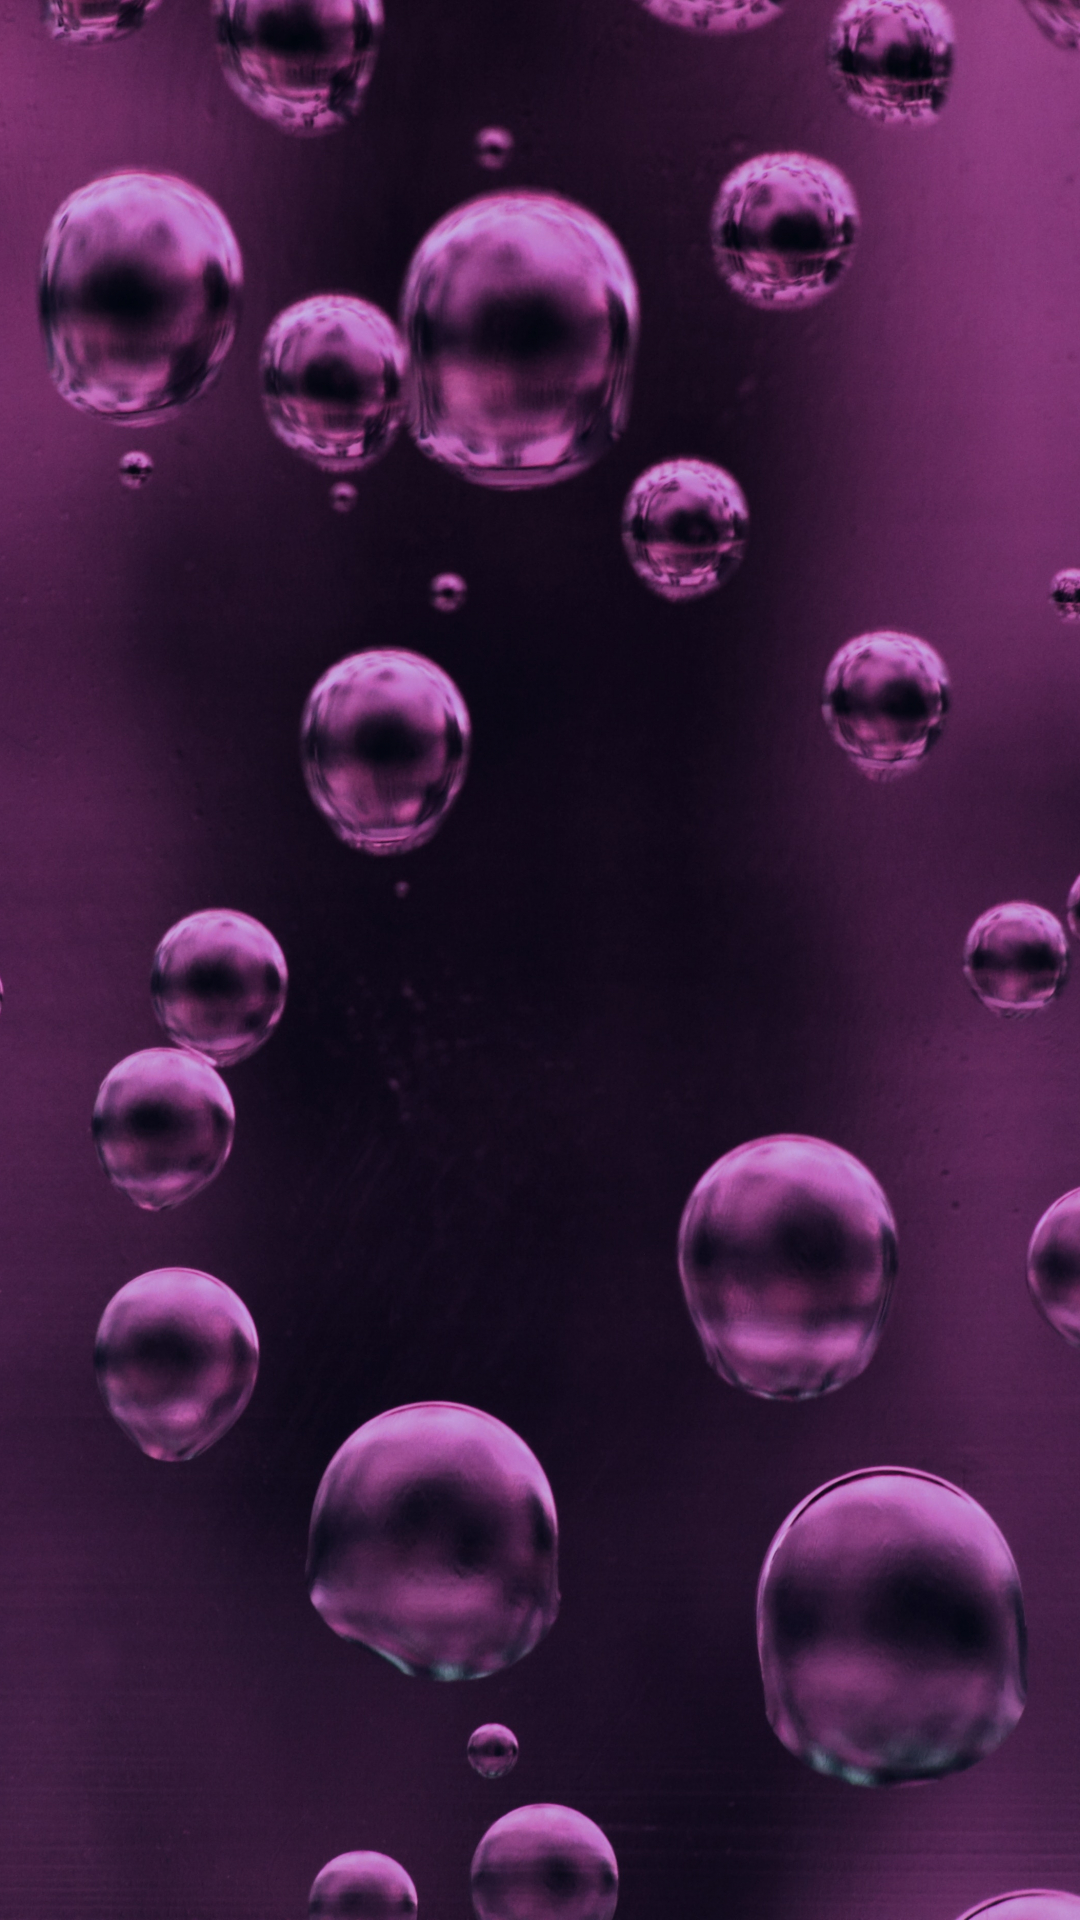 Purple Liquid Bubbles iPhone Wallpaper